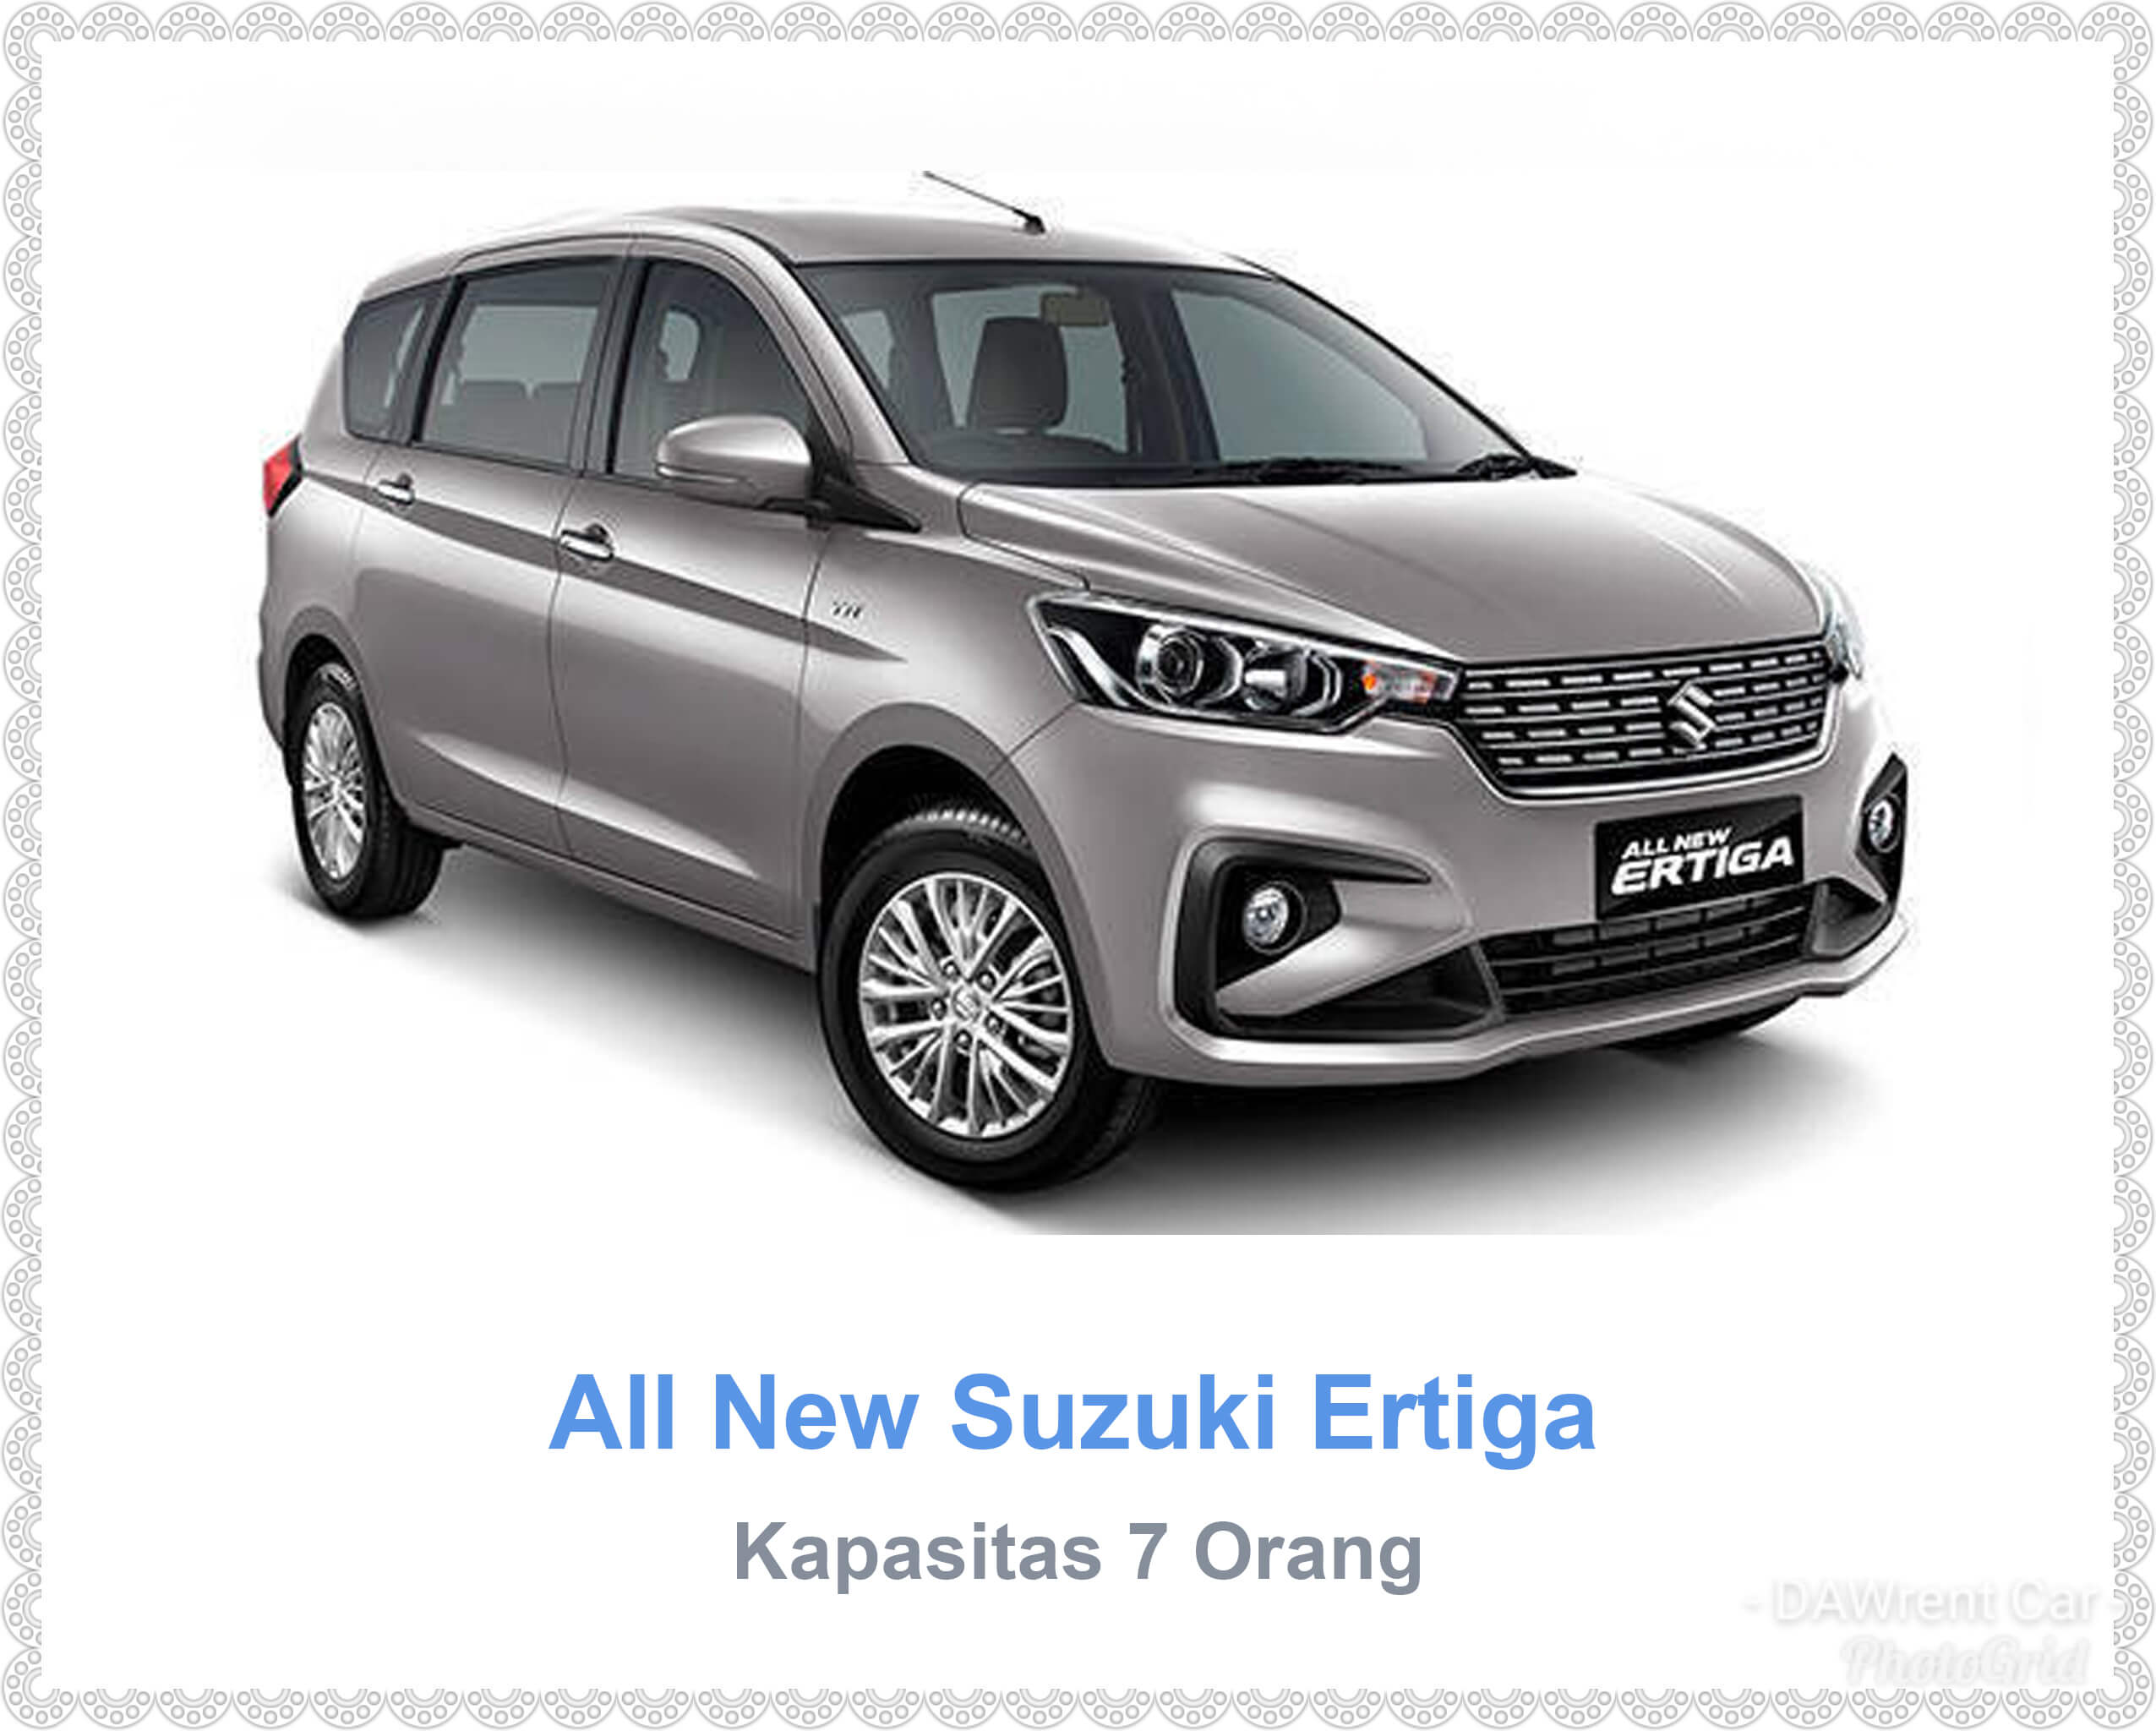 All New Suzuki Ertiga